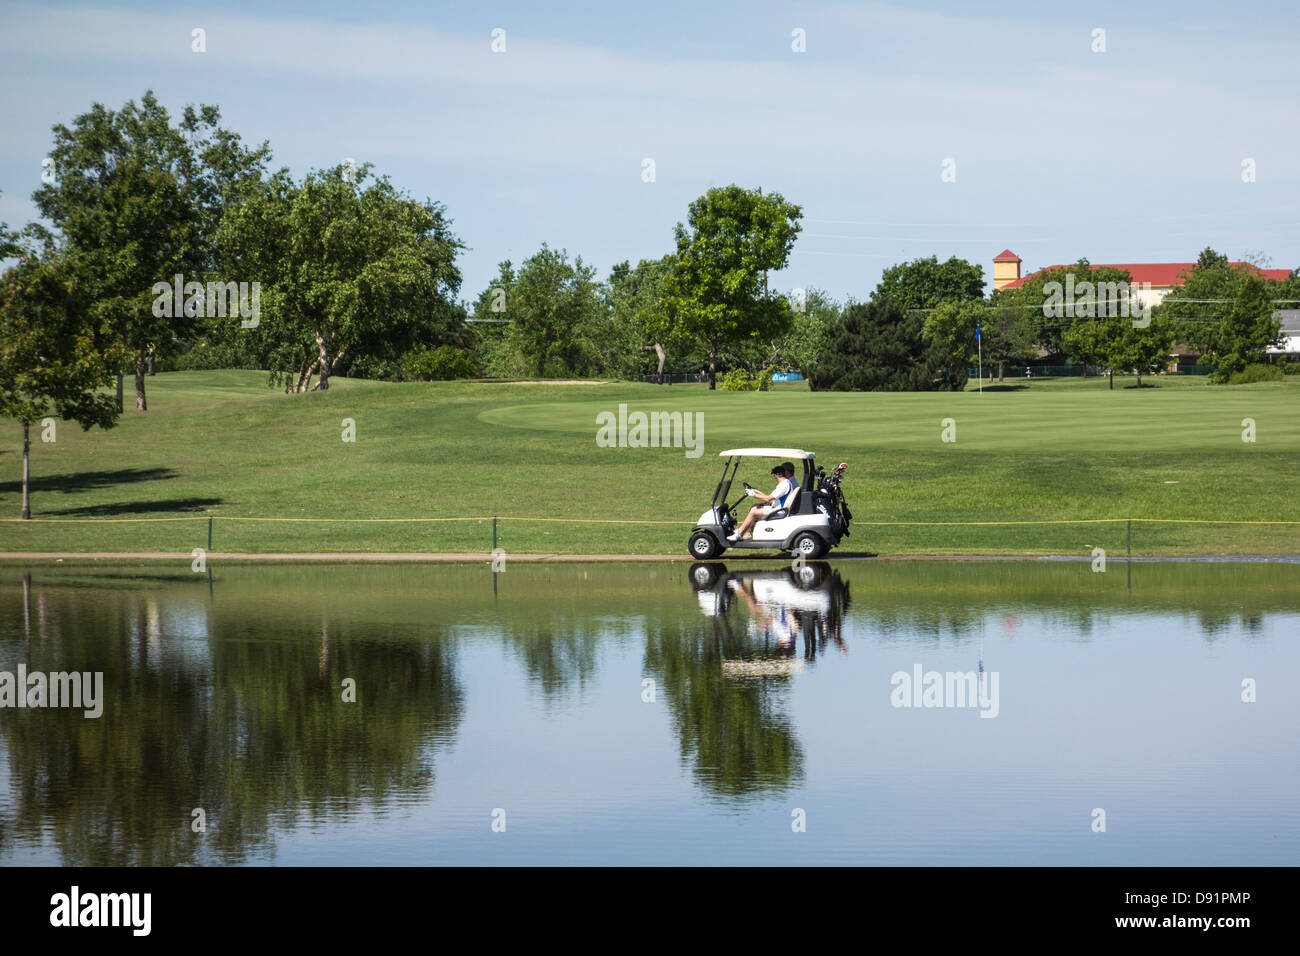 Deux golfeurs dans un chariot de golf suivre le sentier du lac Hefner panier au cours de l'Ocvf, Oklahoma City, Oklahoma, USA. Banque D'Images